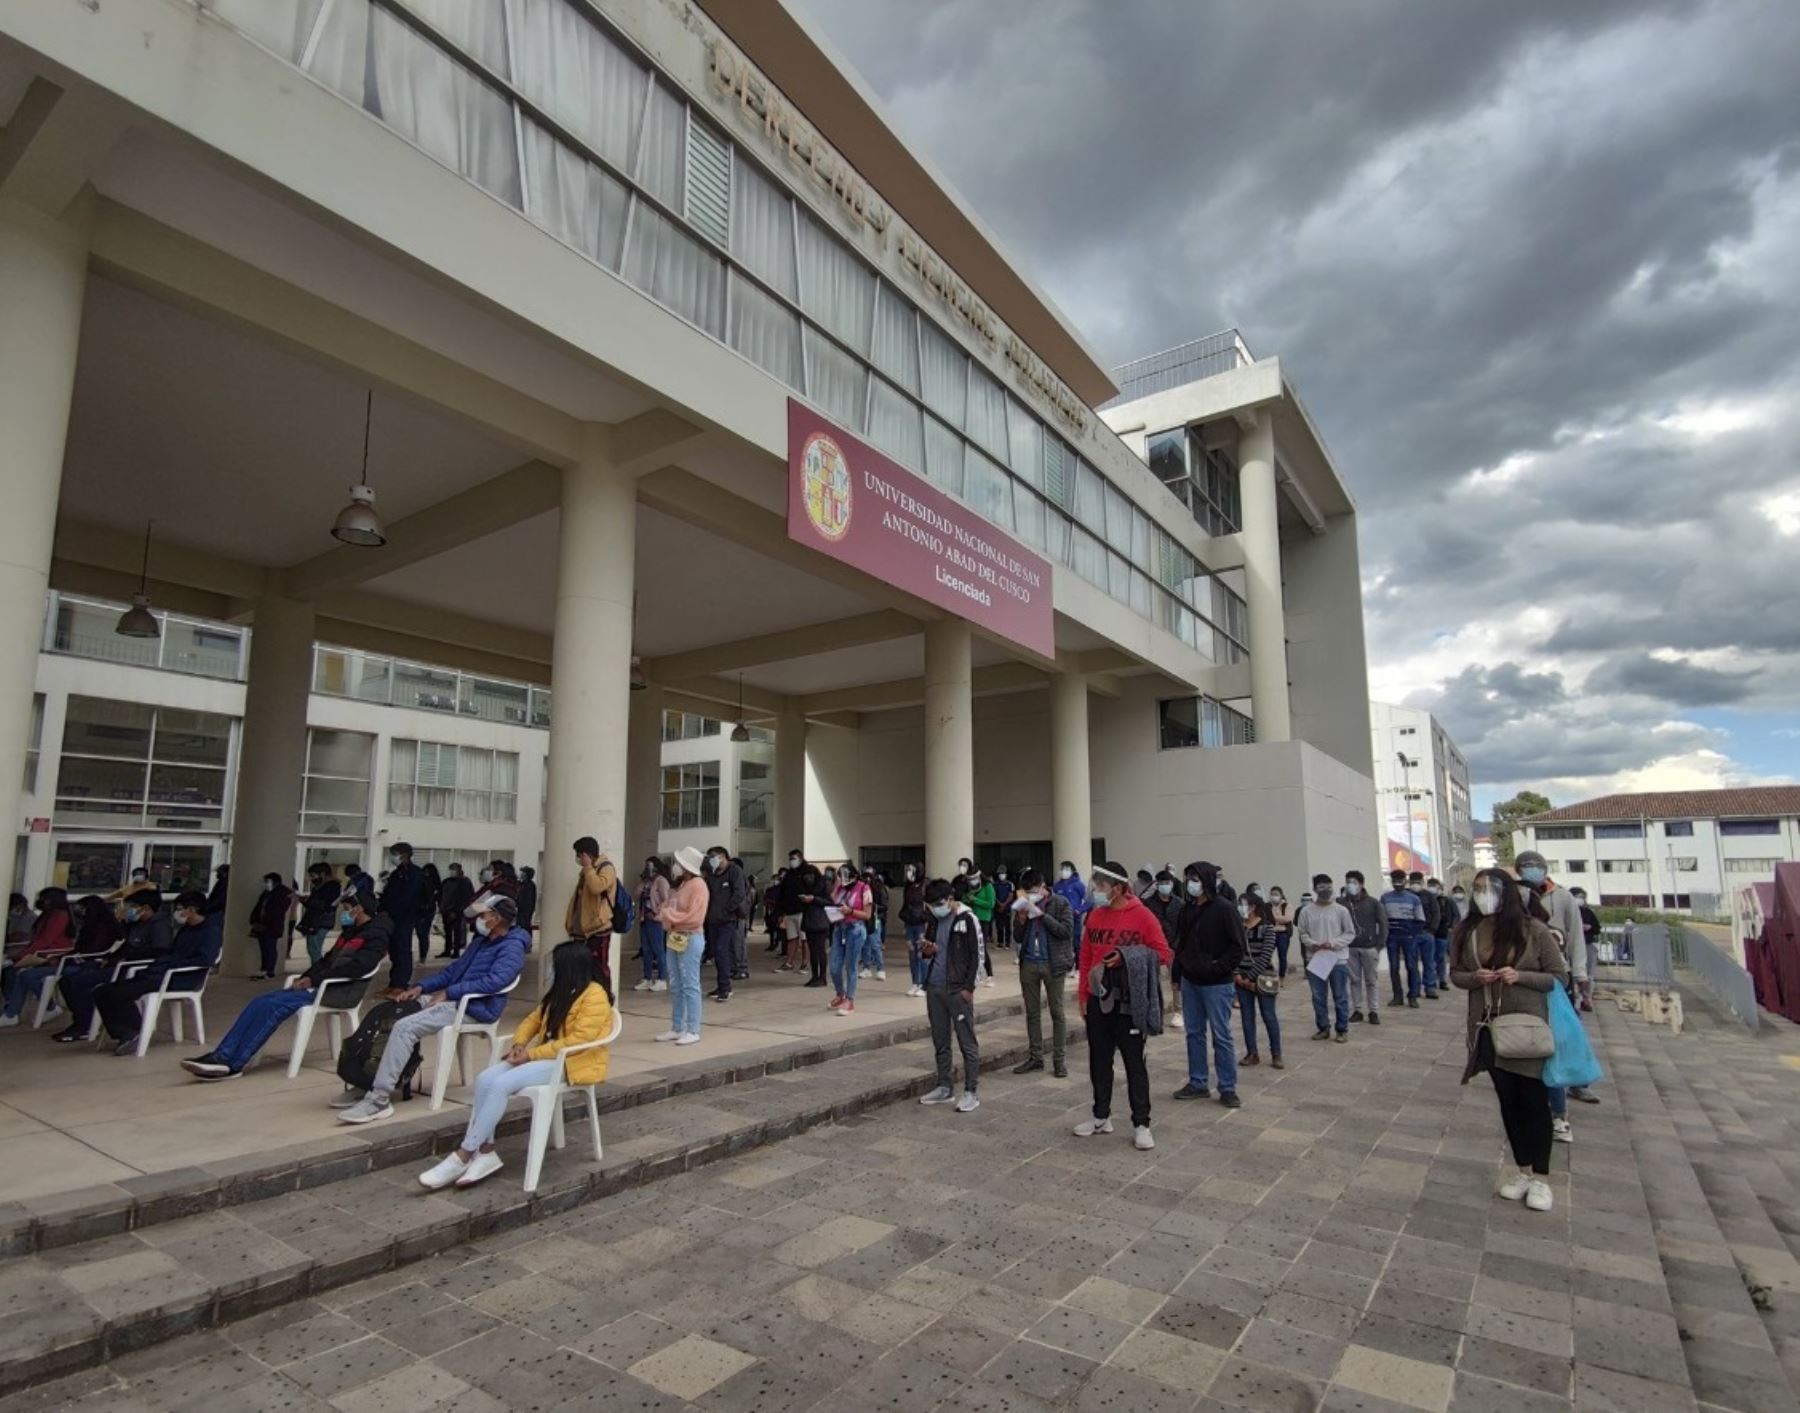 La Universidad Nacional San Antonio Abad de Cusco exigirá a los postulantes estar vacunados contra el covid-19, anunciaron sus autoridades.